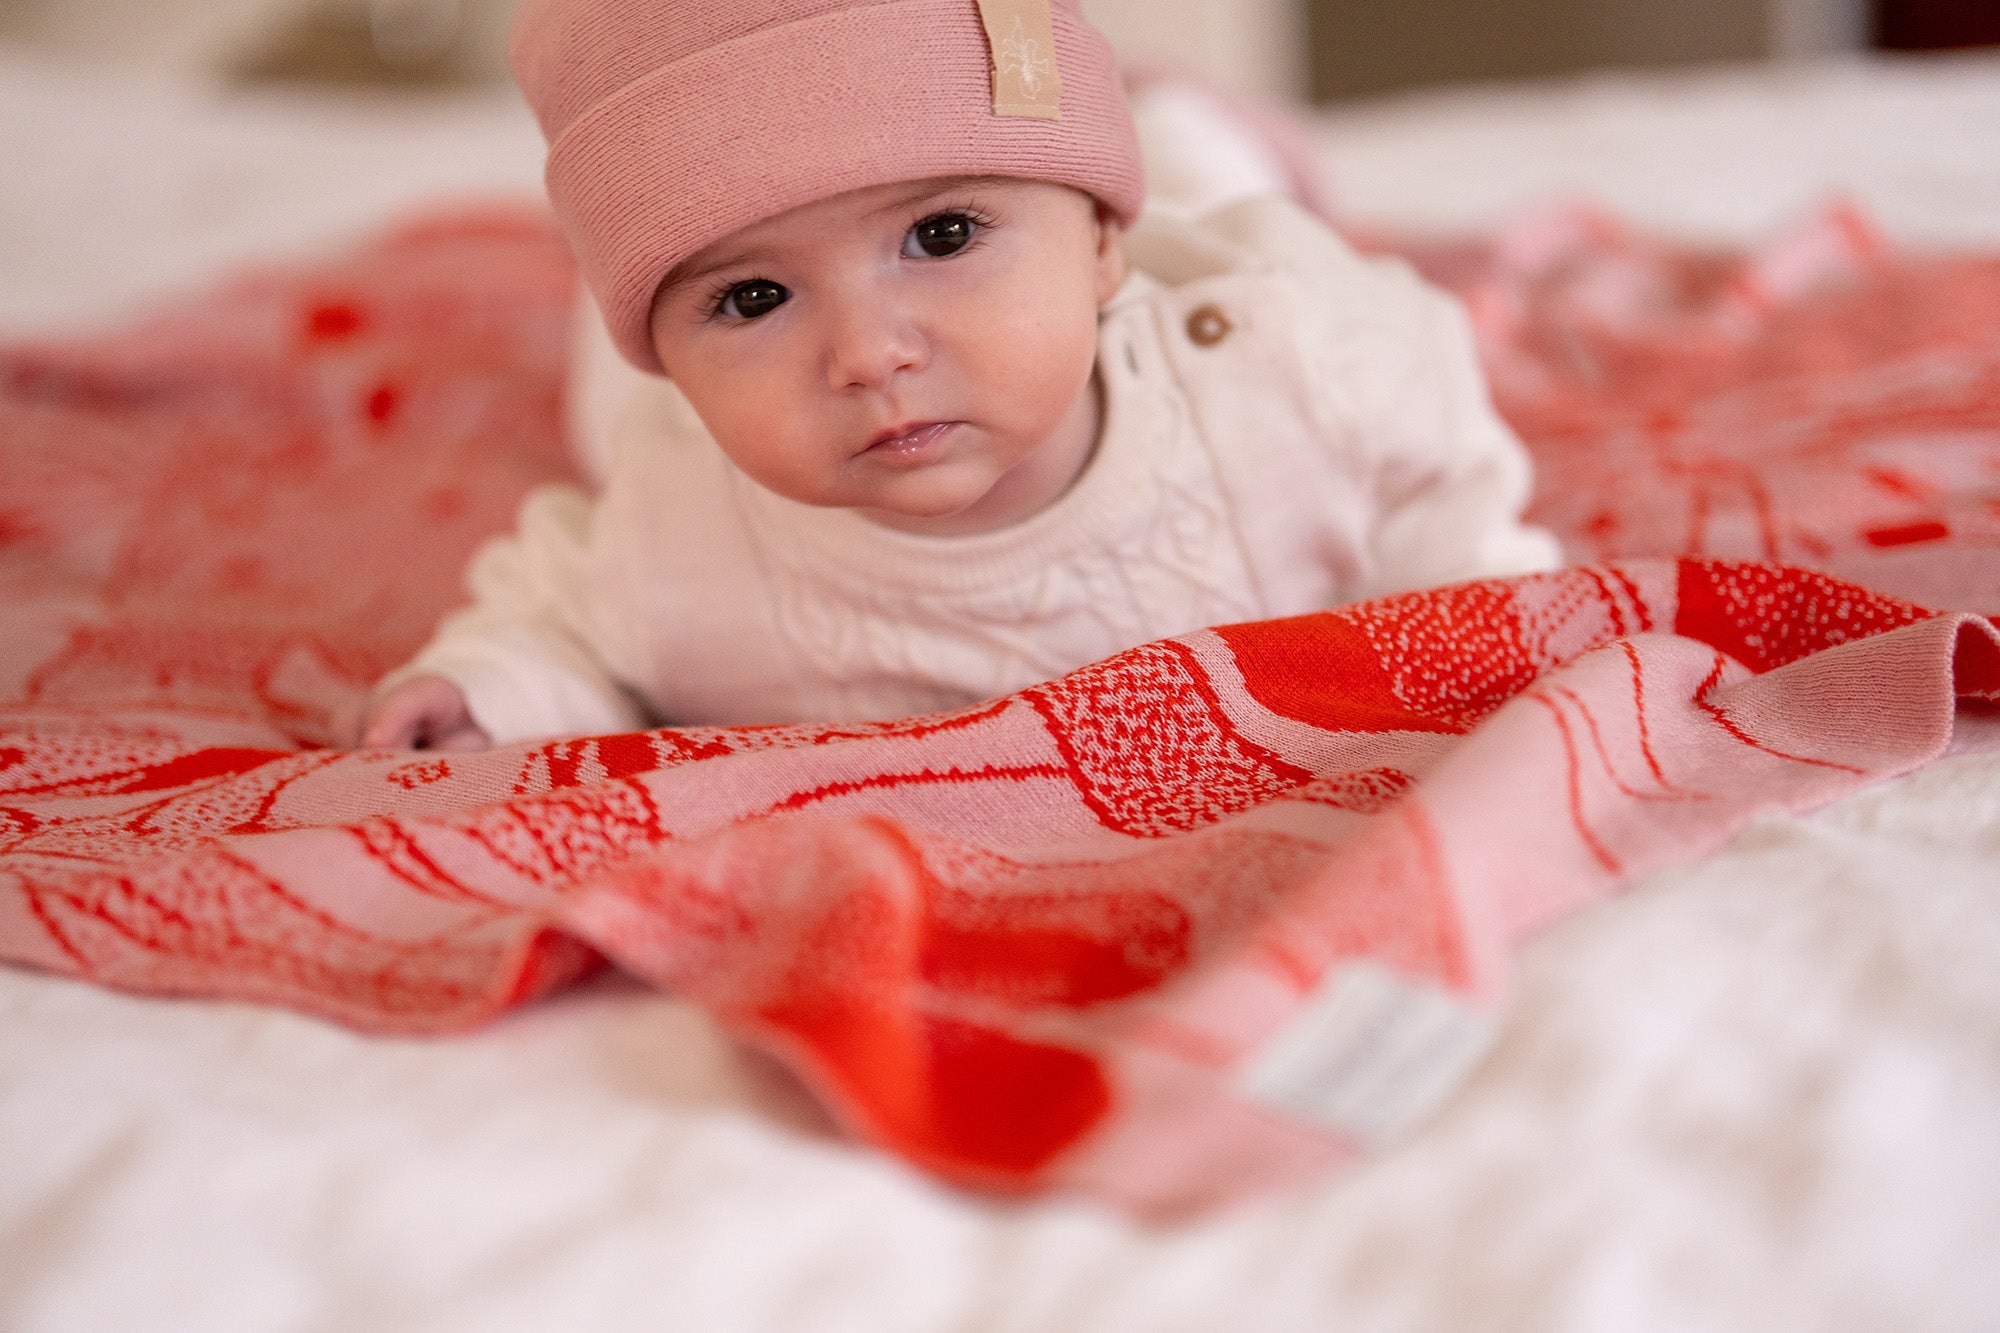 Entdecke unsere hochwertigen LILIMOON Babydecke 'ROSALIE': Hergestellt aus feinster italienischer Baumwolle und Kaschmir in Hamburg. Personalisiere deine Decke mit dem Wunschnamen deines Kindes. 